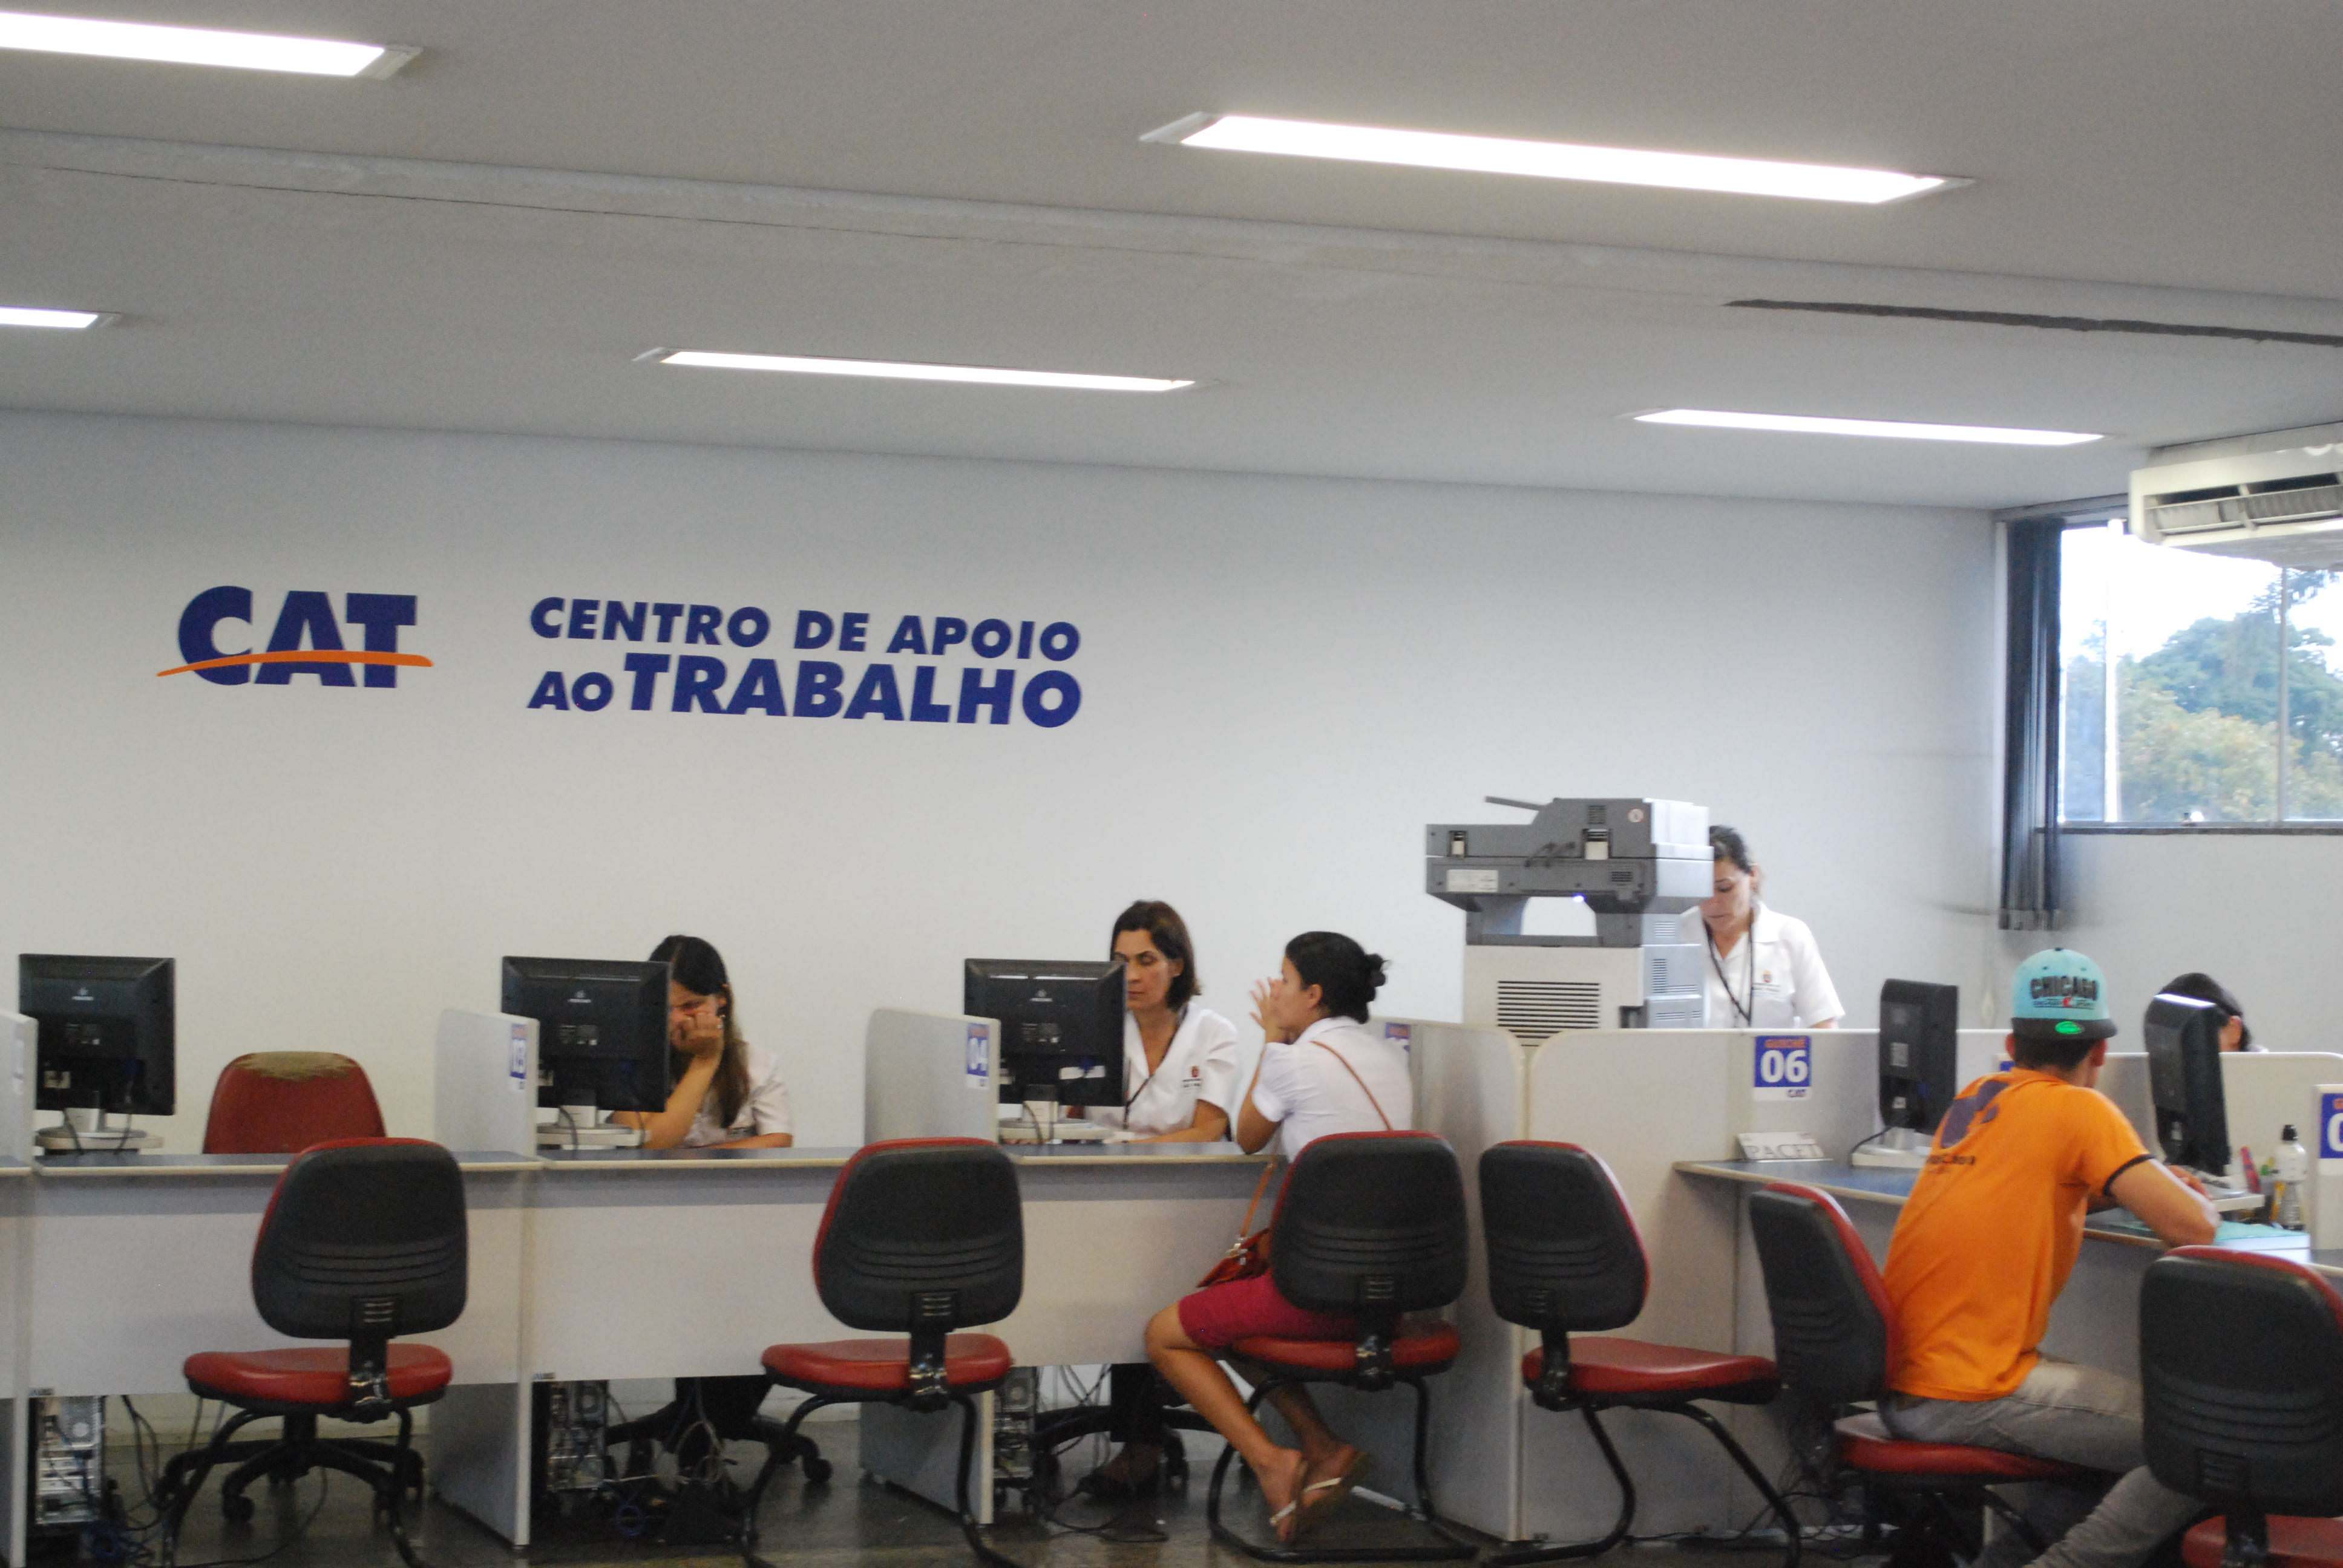 Os interessados em renegociar dívidas contarão com profissionais especializados nas unidades do CAT: Itaim Paulista, Perus, Santana e Interlagos